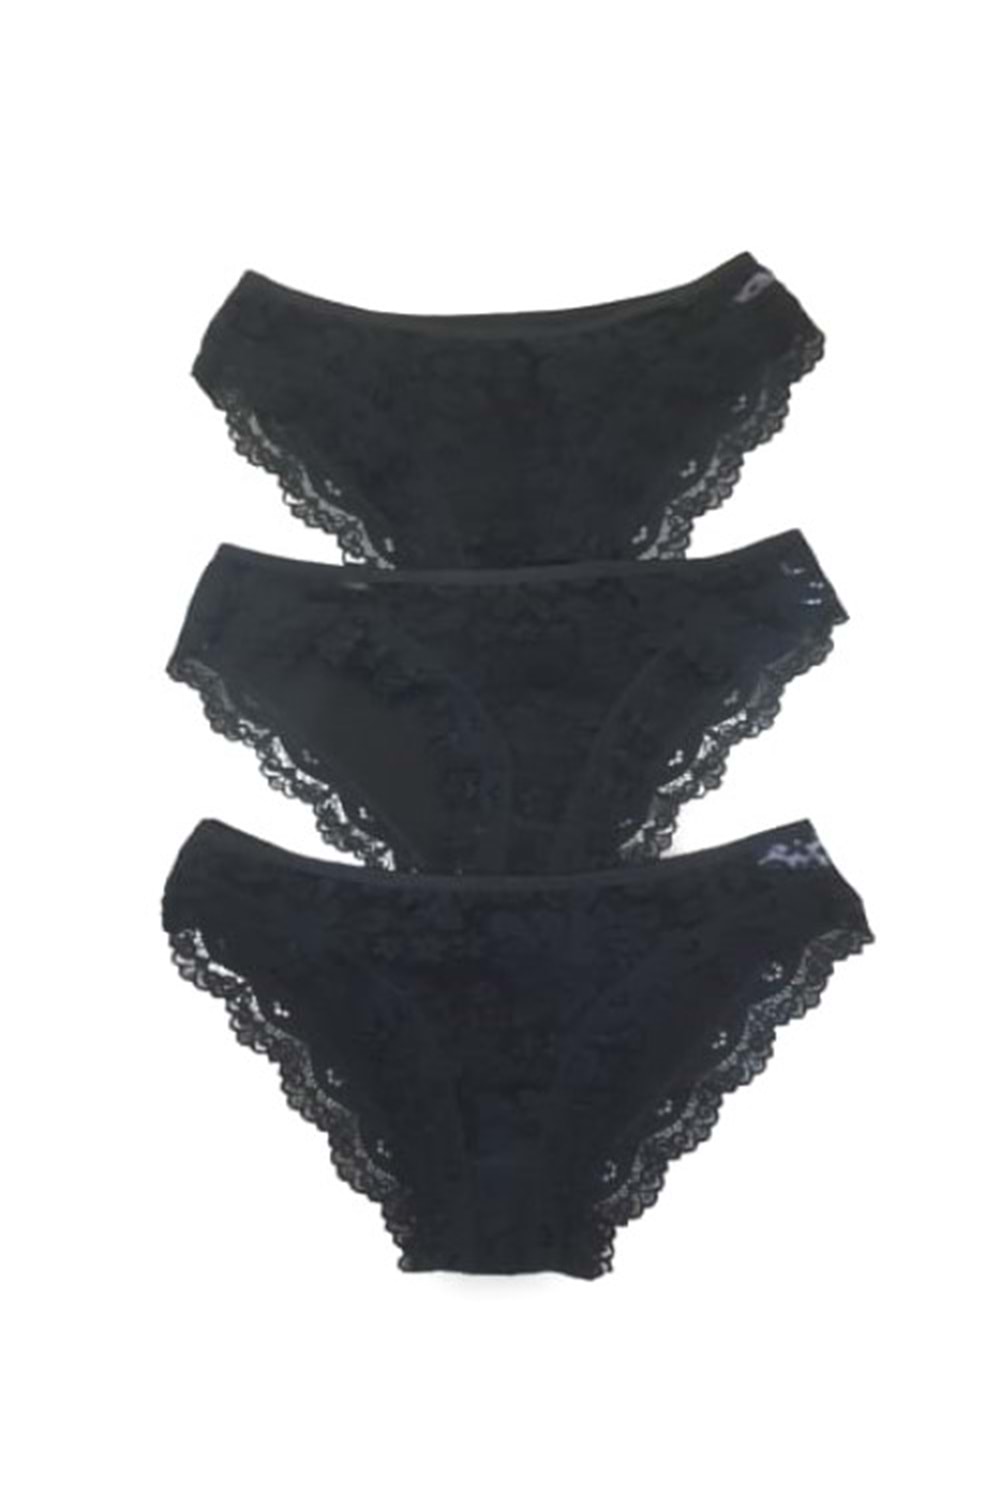 Atilla Kadın Küpür Dantelli Bikini Külot A-550 (3 Paket) - Siyah - TEK EBAT